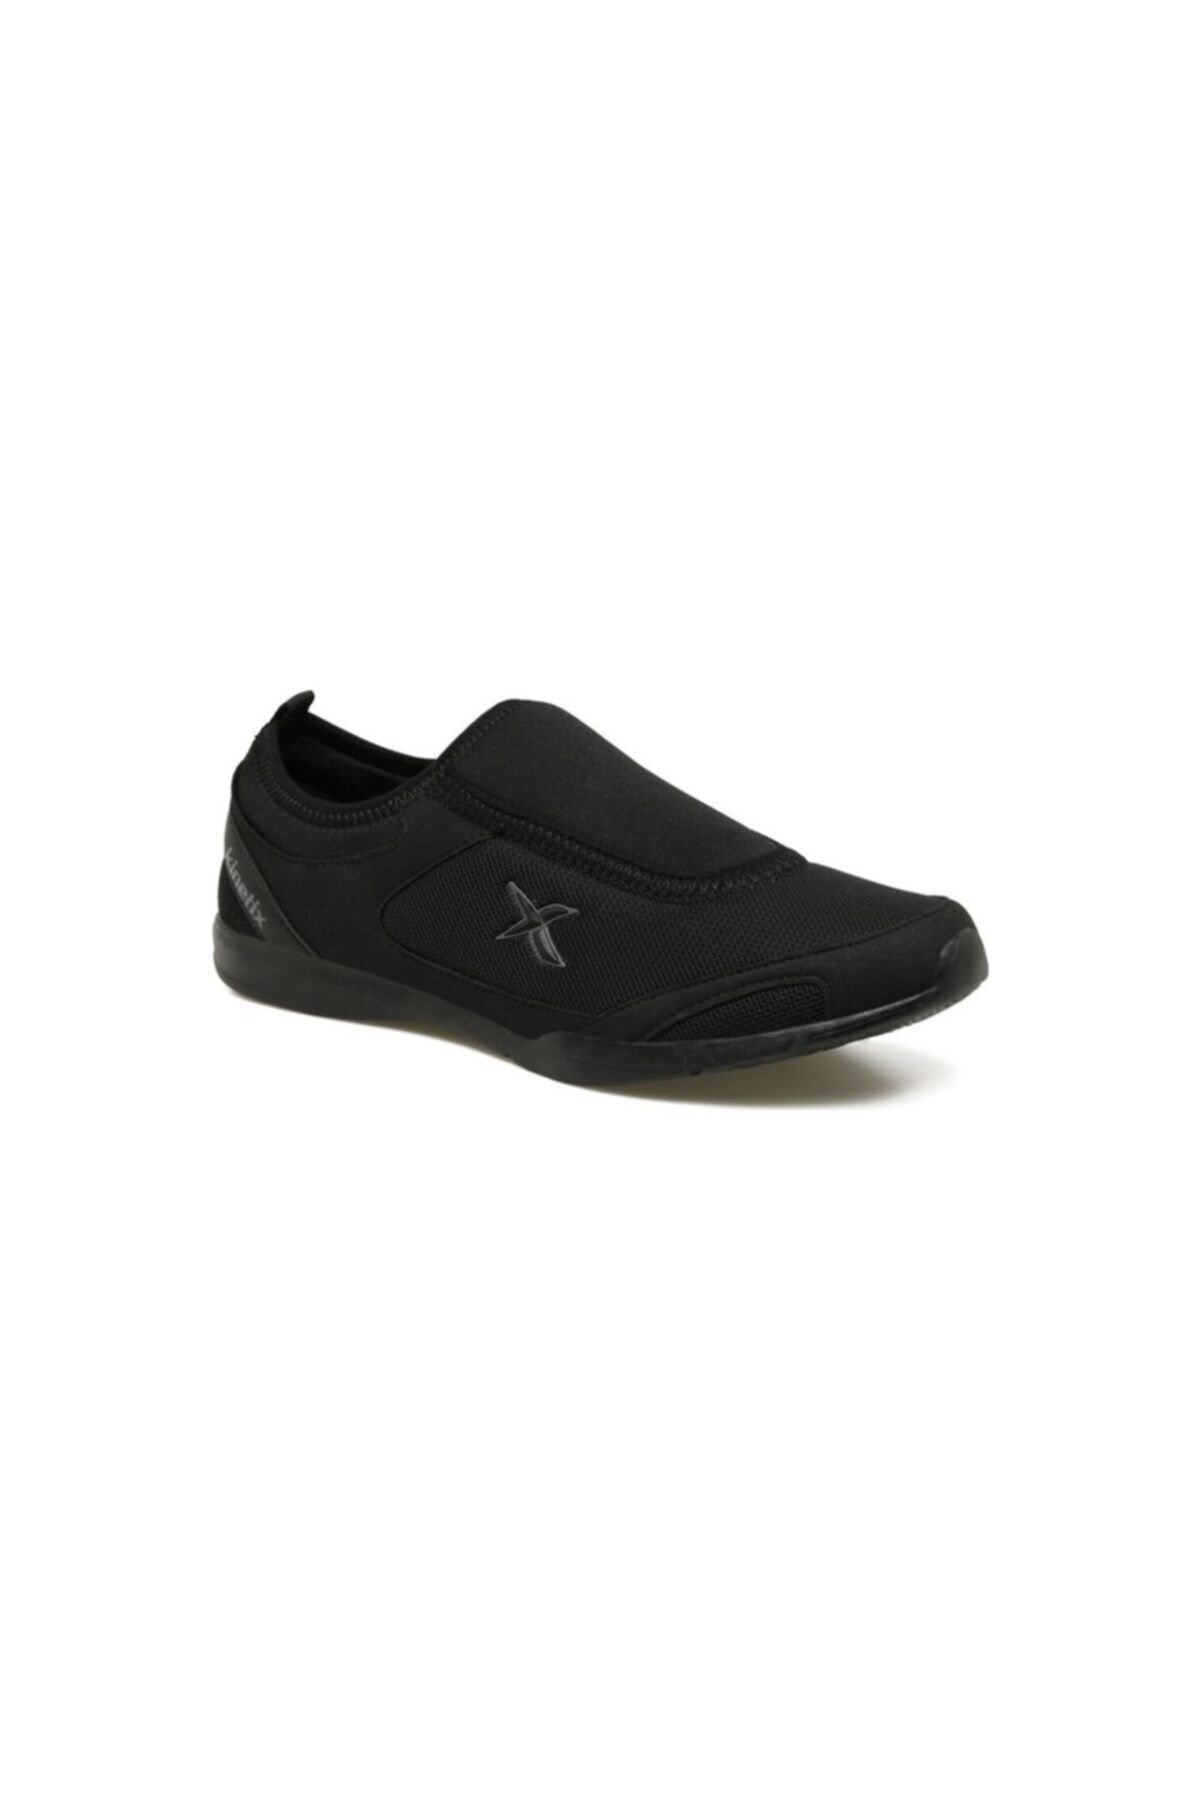 Kinetix Macon W Unisex Siyah Bağsız Spor Ayakkabı